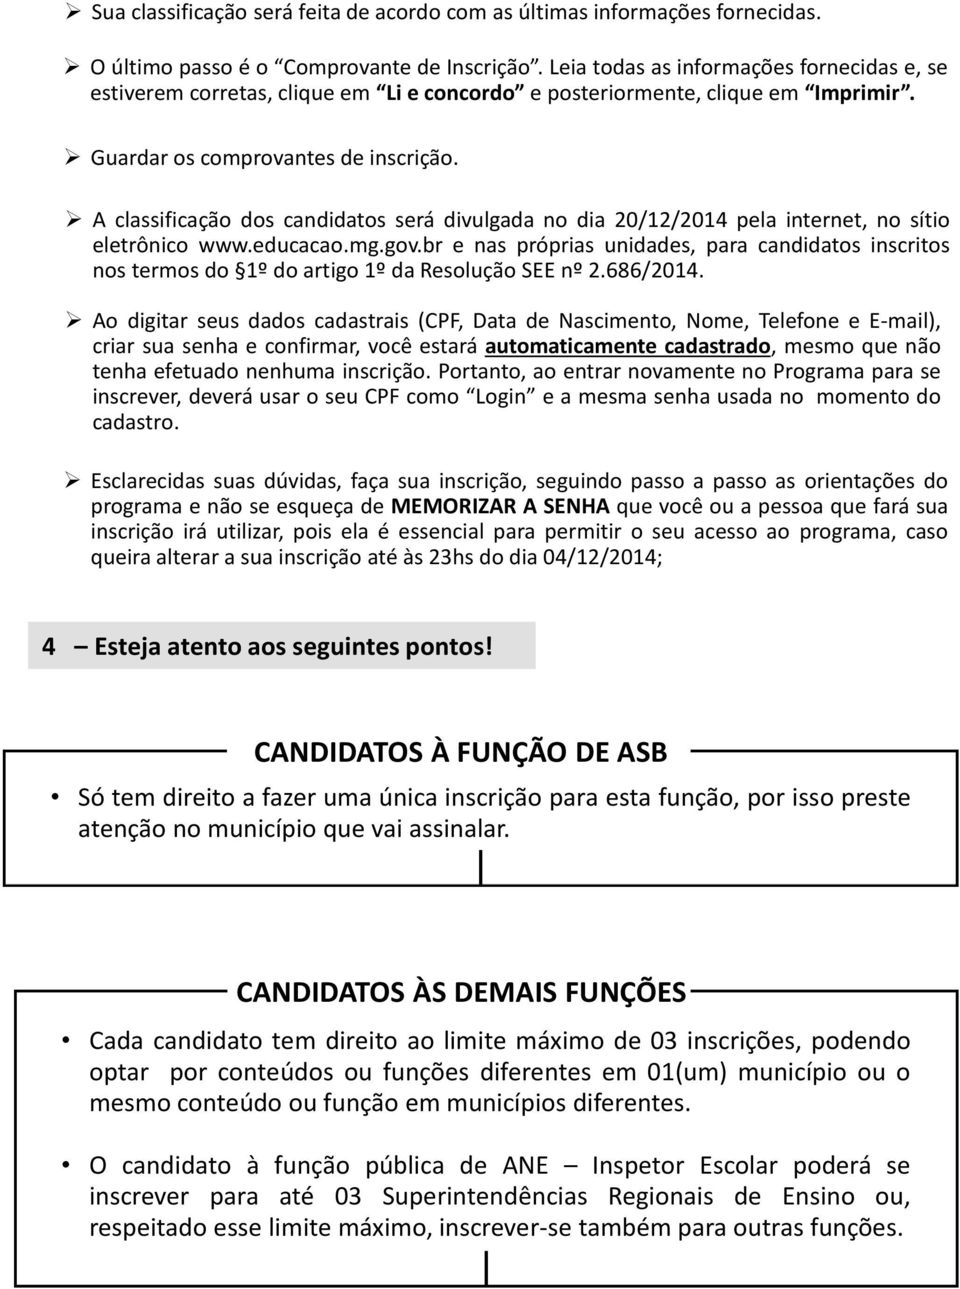 A classificação dos candidatos será divulgada no dia 20/12/2014 pela internet, no sítio eletrônico www.educacao.mg.gov.